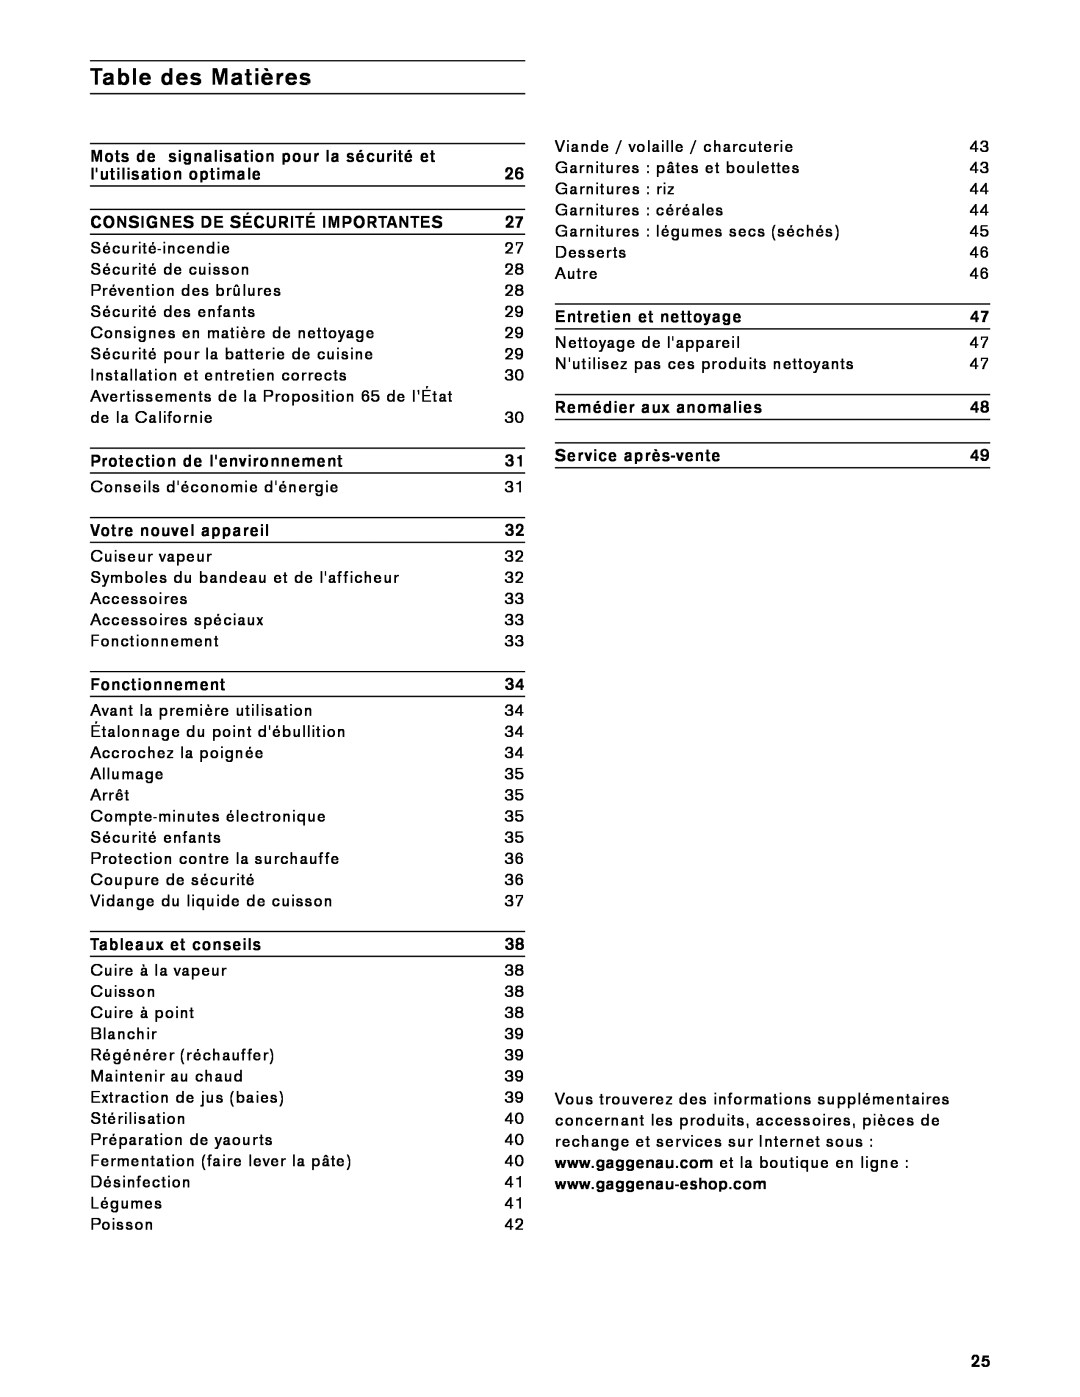 Gaggenau VK 230 714 manual Table des Matières 